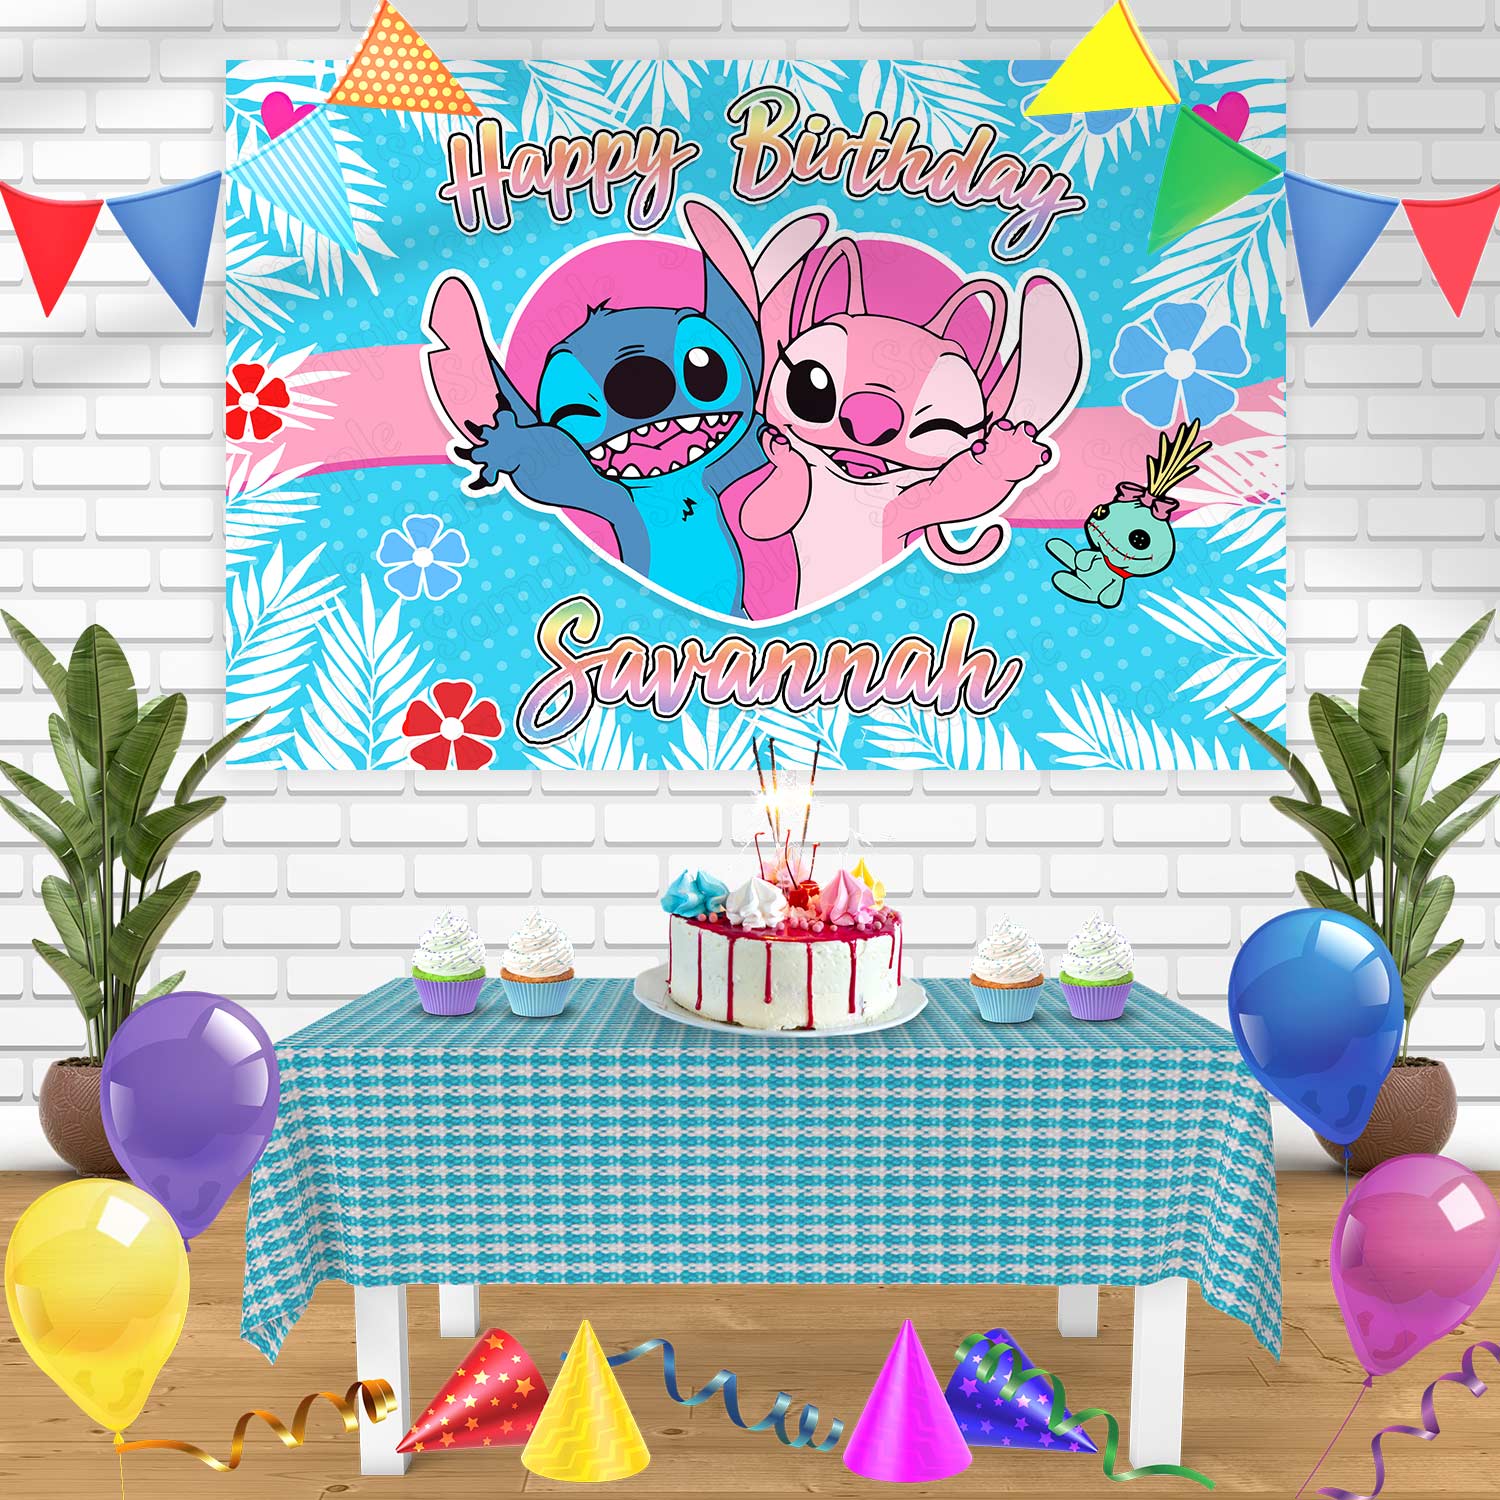 Lilo Stitch Birthday Party Decorations